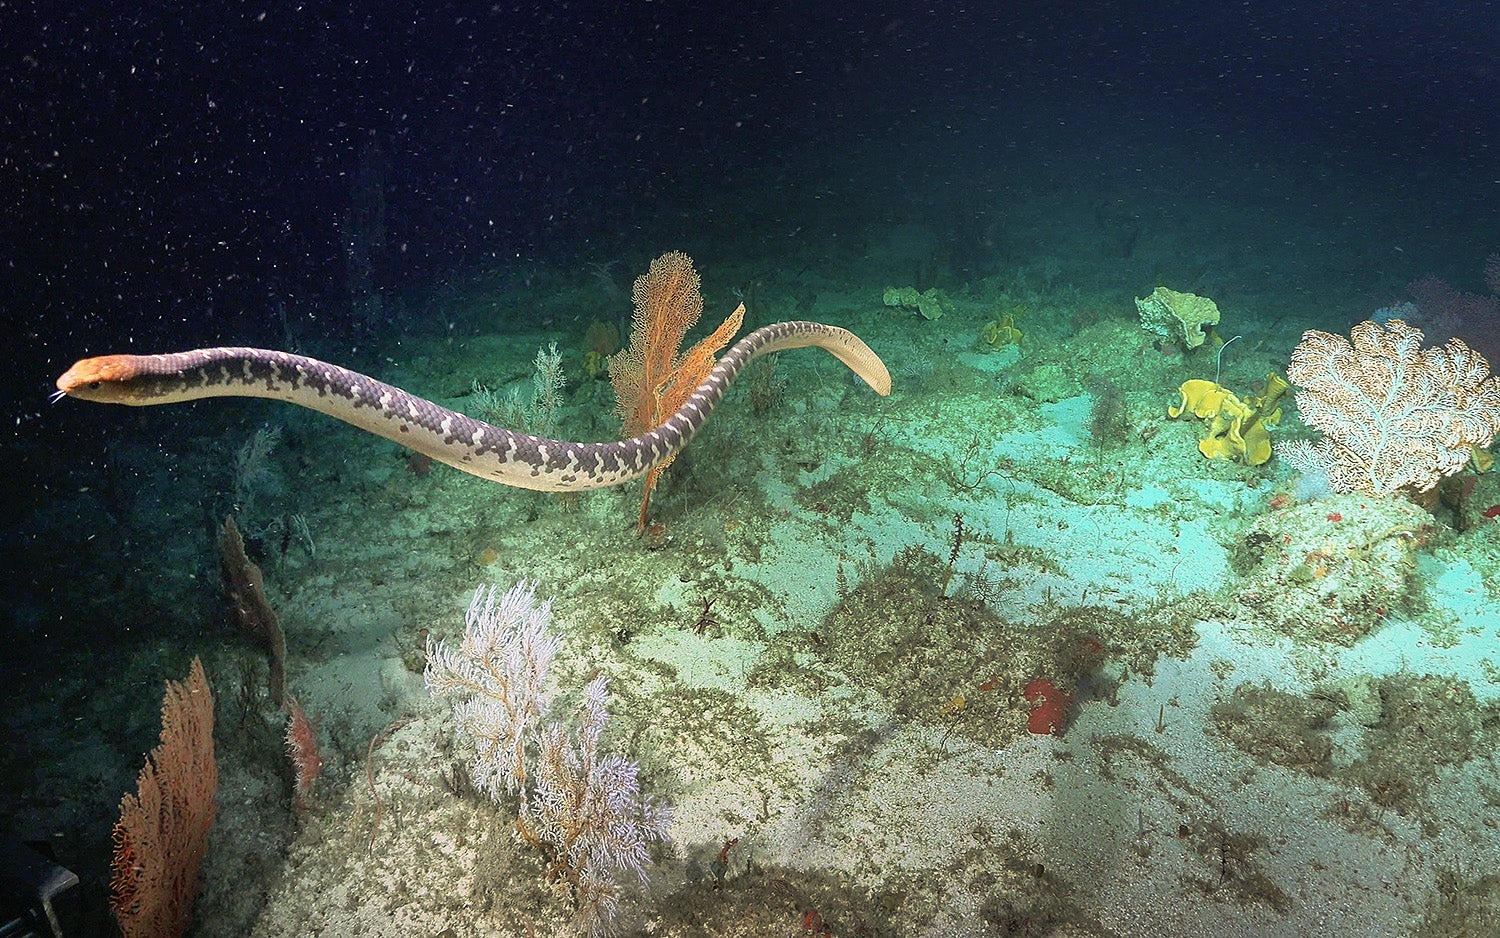 Another sea snake. (Photo: Schmidt Ocean Institute)